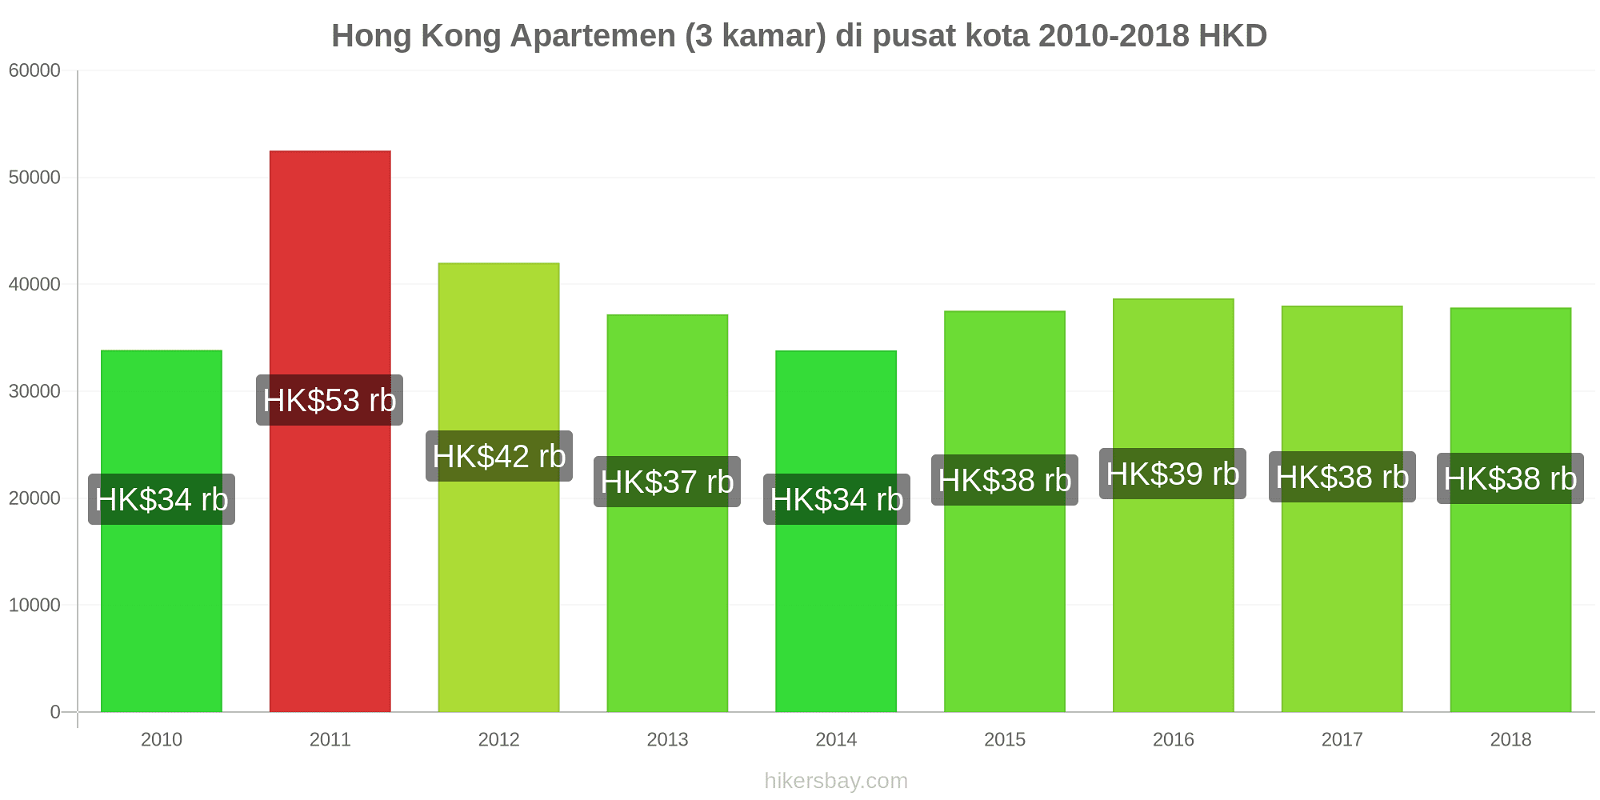 Hong Kong perubahan harga Apartemen (3 kamar) di pusat kota hikersbay.com